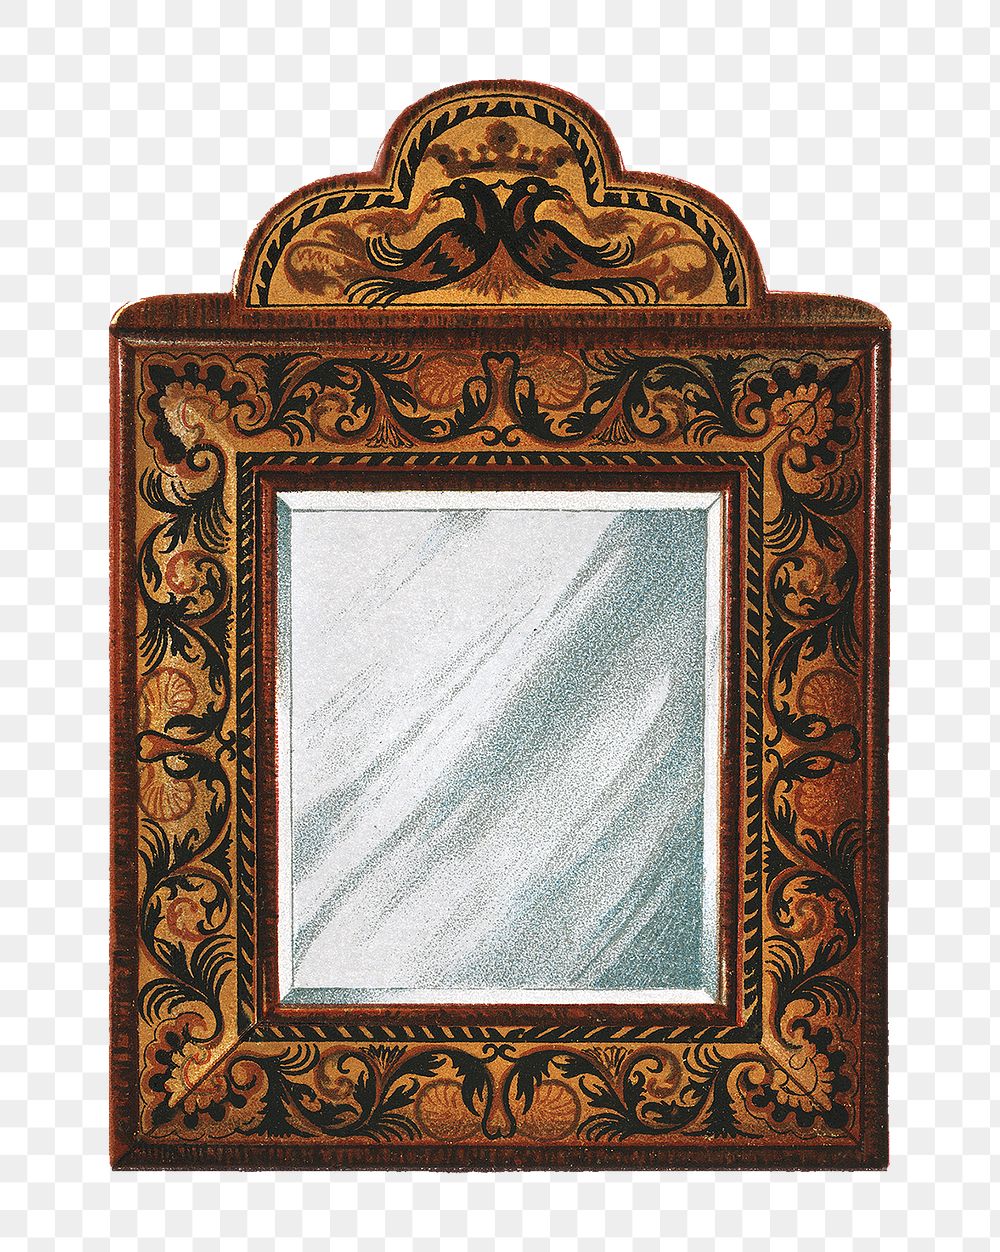 Mirror png vintage Illustration set on transparent background